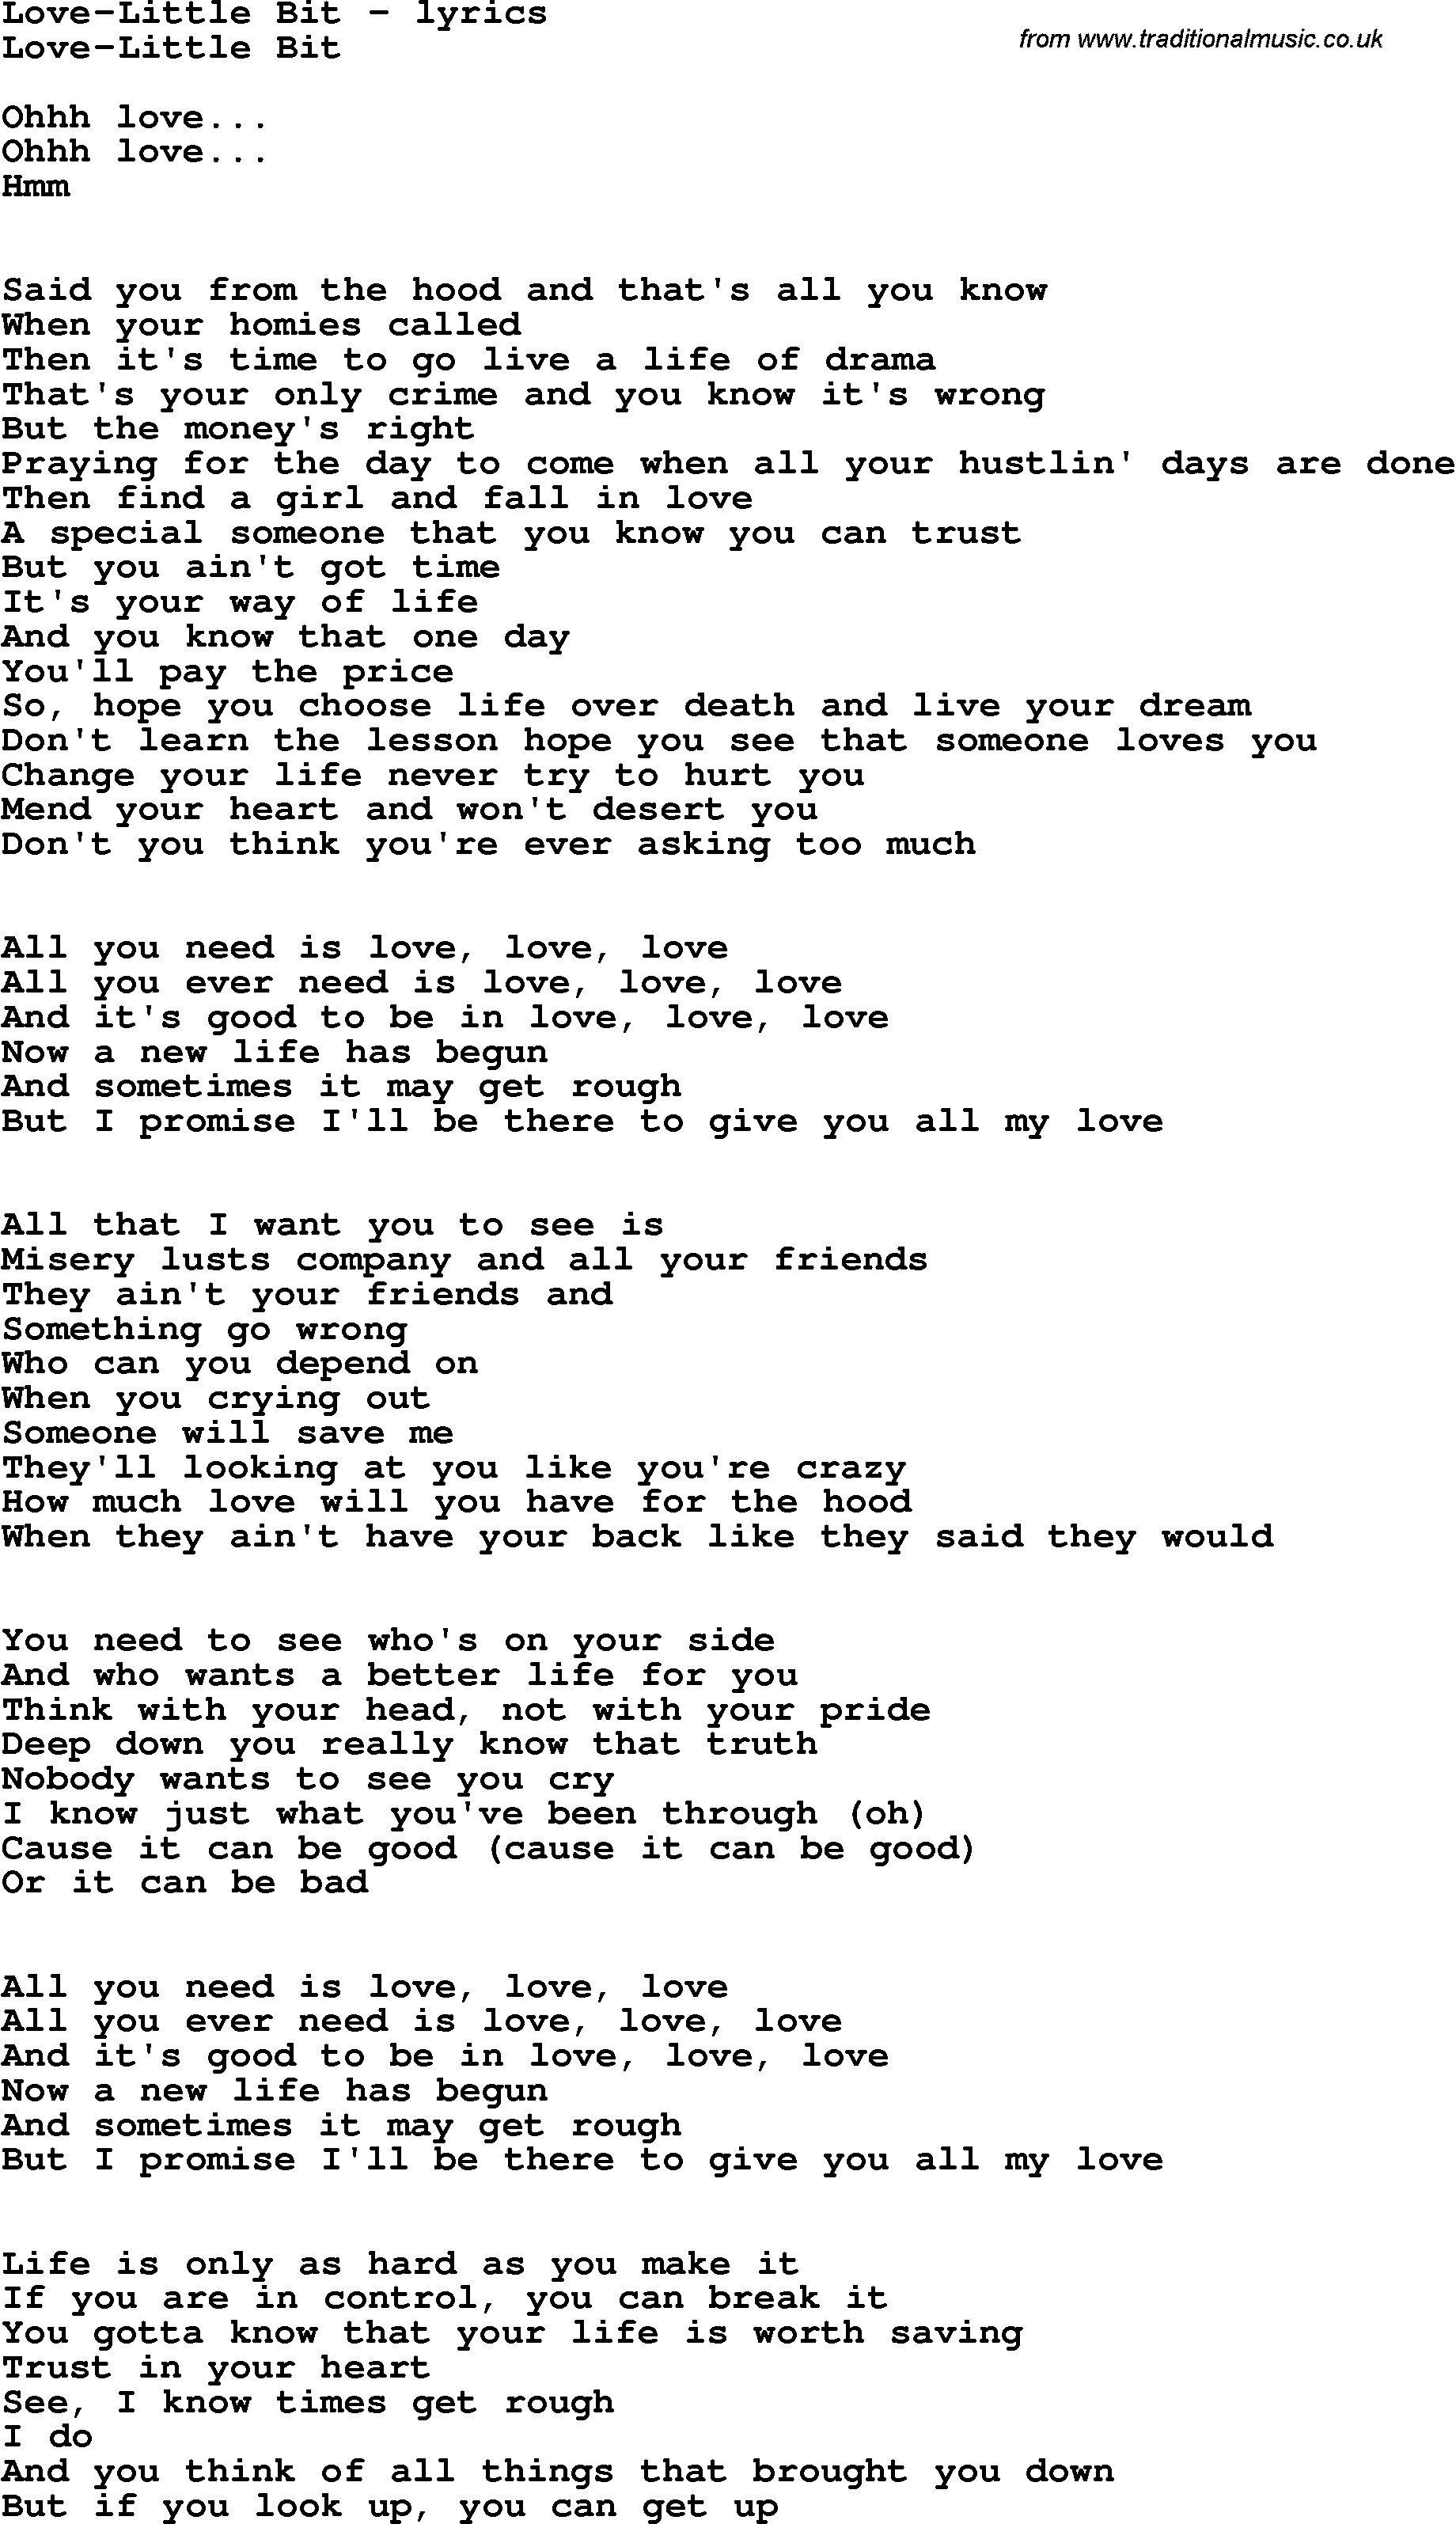 Love Song Lyrics for: Love-Little Bit